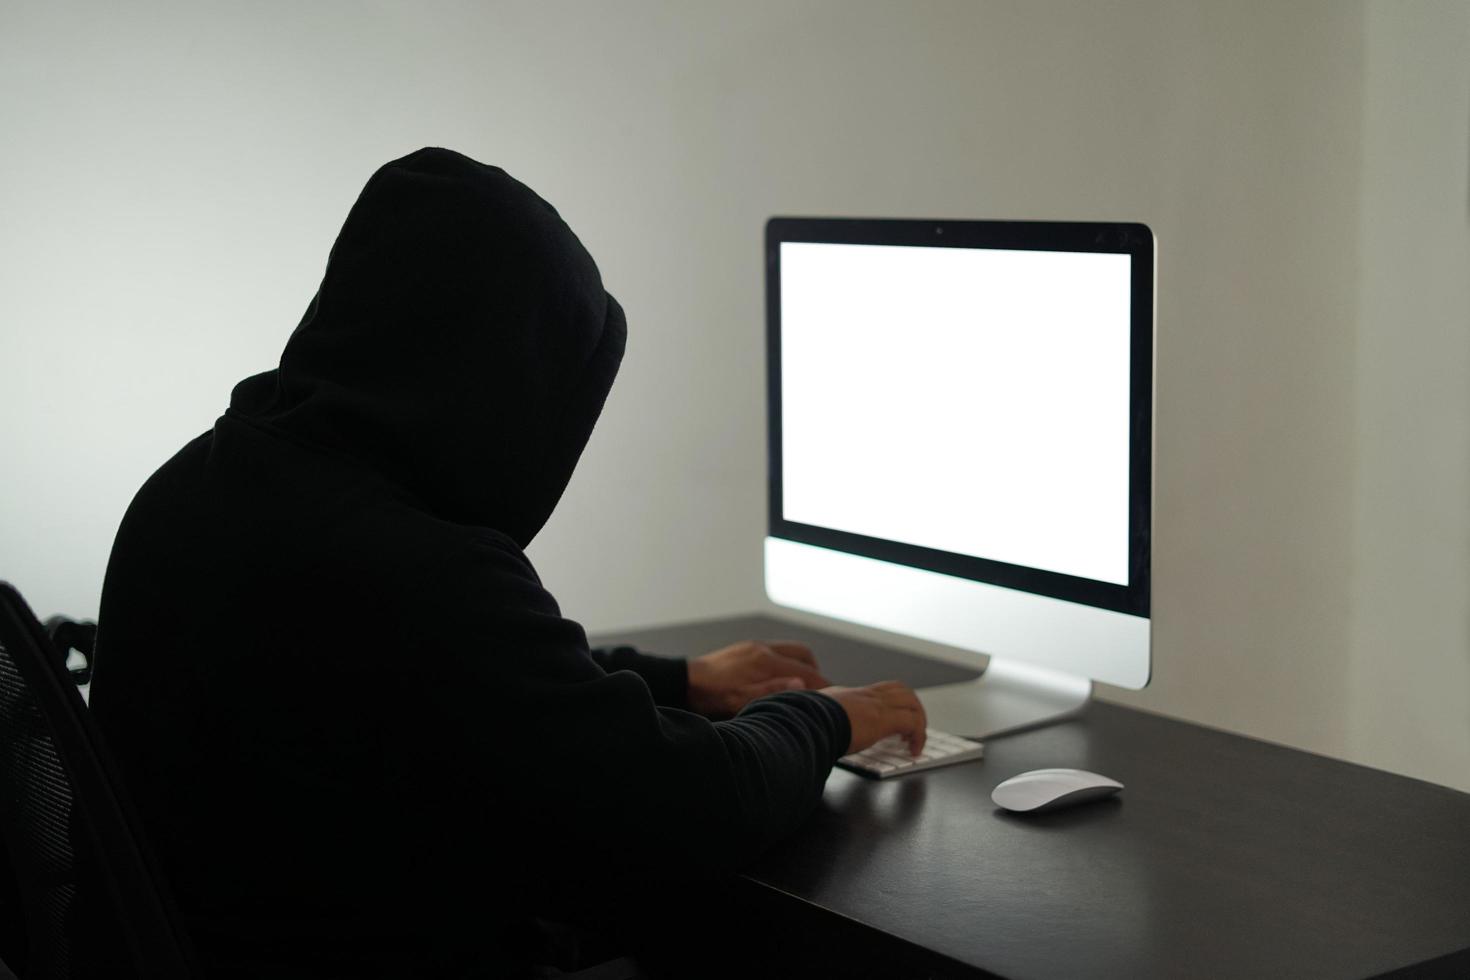 indonesia, 12212021 - un uomo che indossa una felpa con cappuccio nera davanti allo schermo bianco vuoto foto